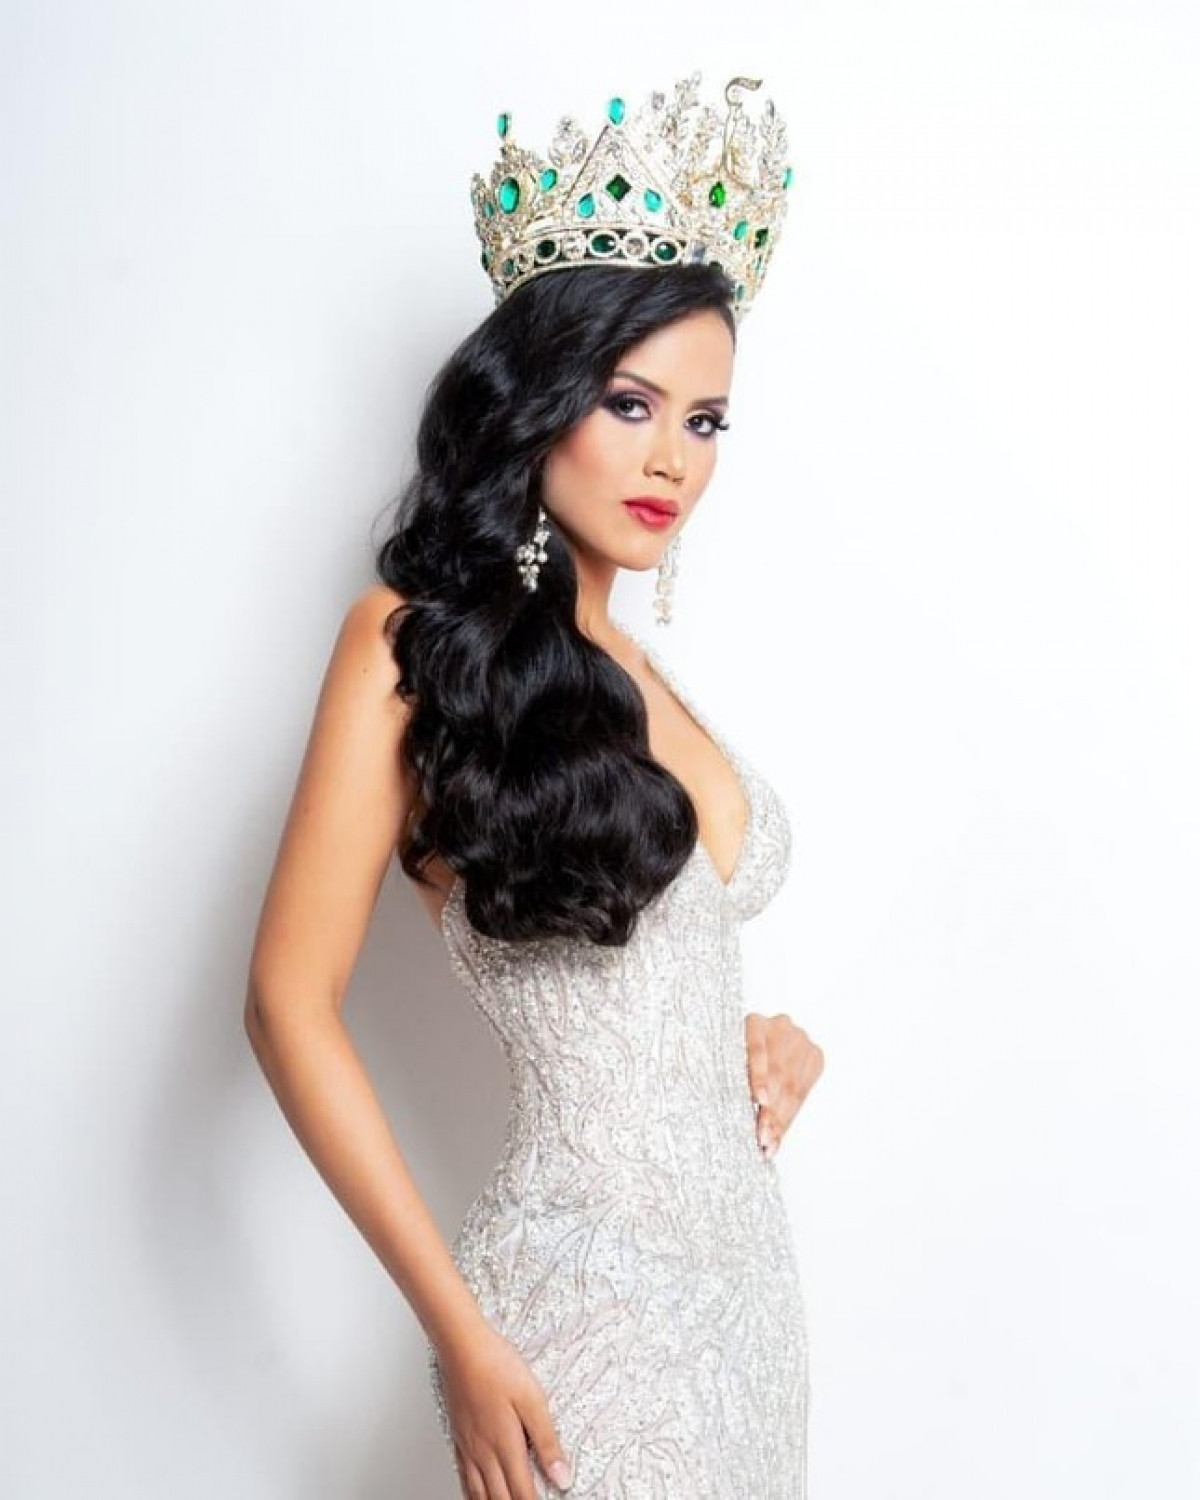 Nét đẹp Latin quyến rũ của nữ sinh báo chí được bổ nhiệm Hoa hậu Hoà bình Guatemala 2021-5